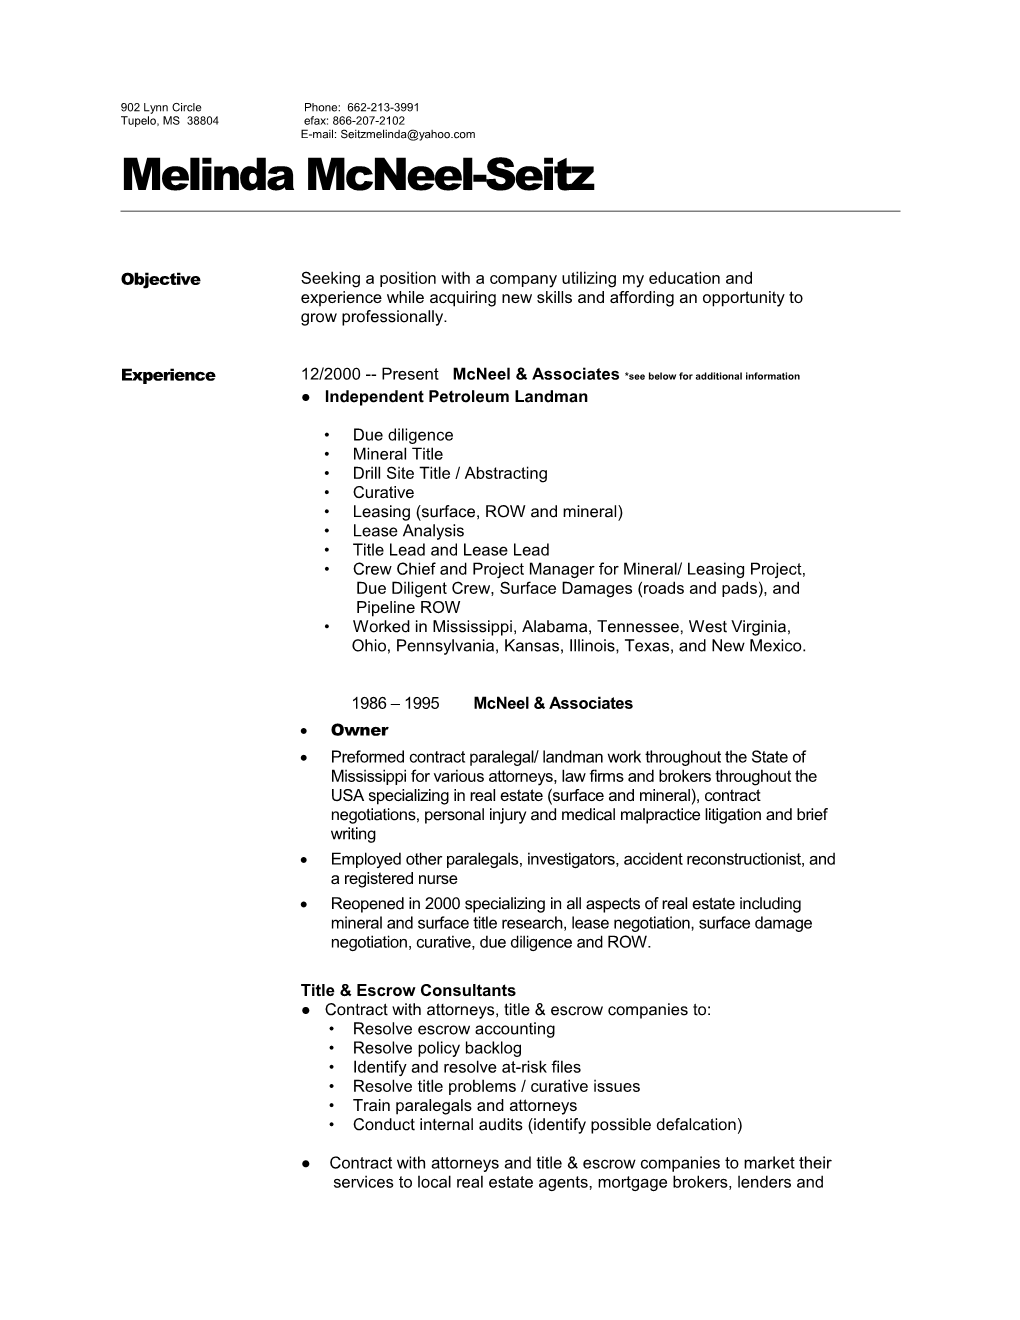 Melinda Mcneel-Seitz